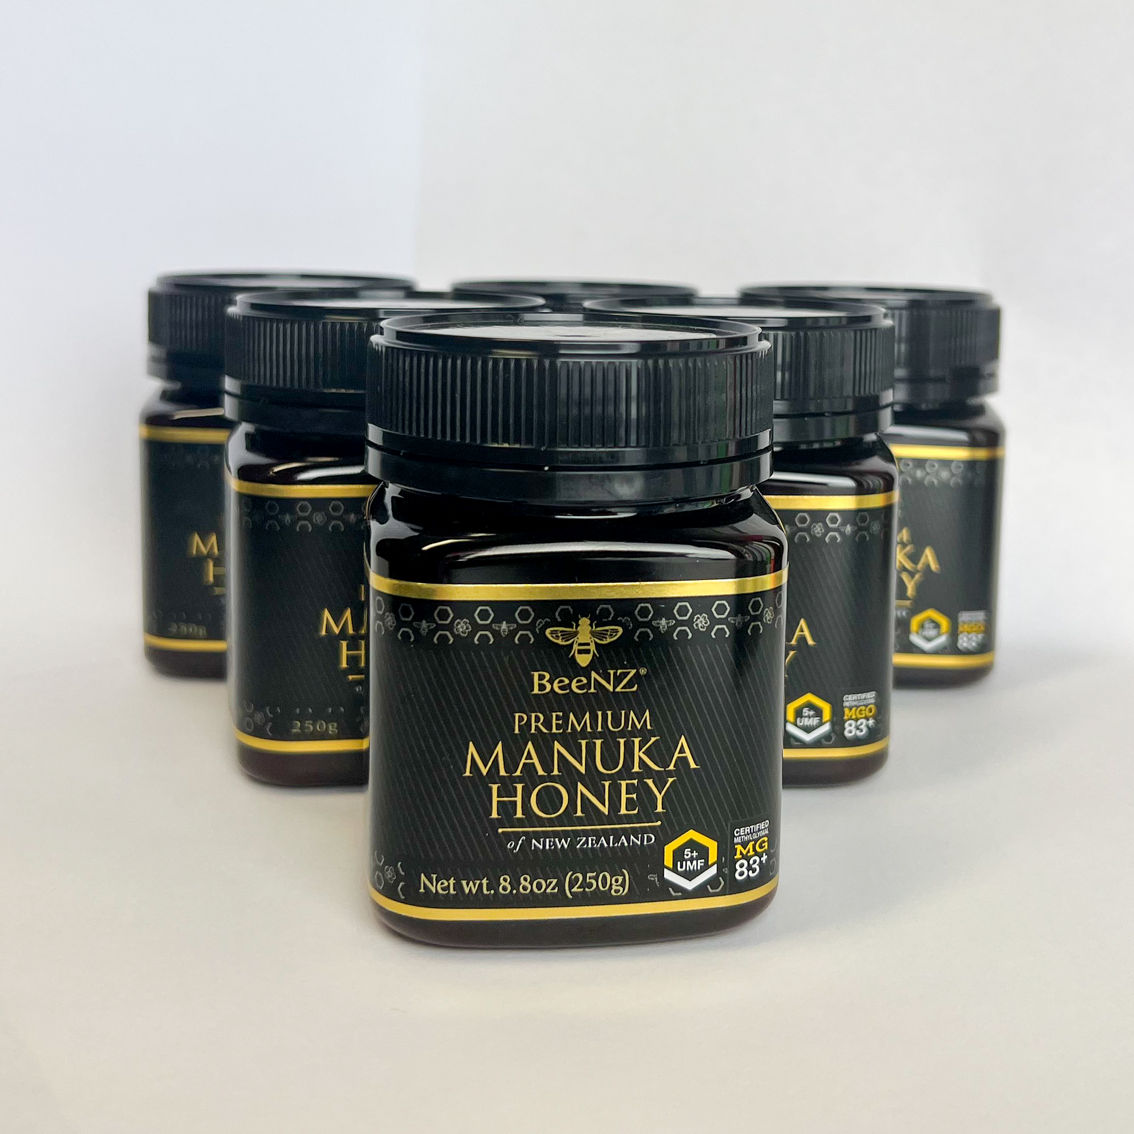 BeeNZ Premium Manuka Honey UMF5 6 pk. - Image 2 of 3